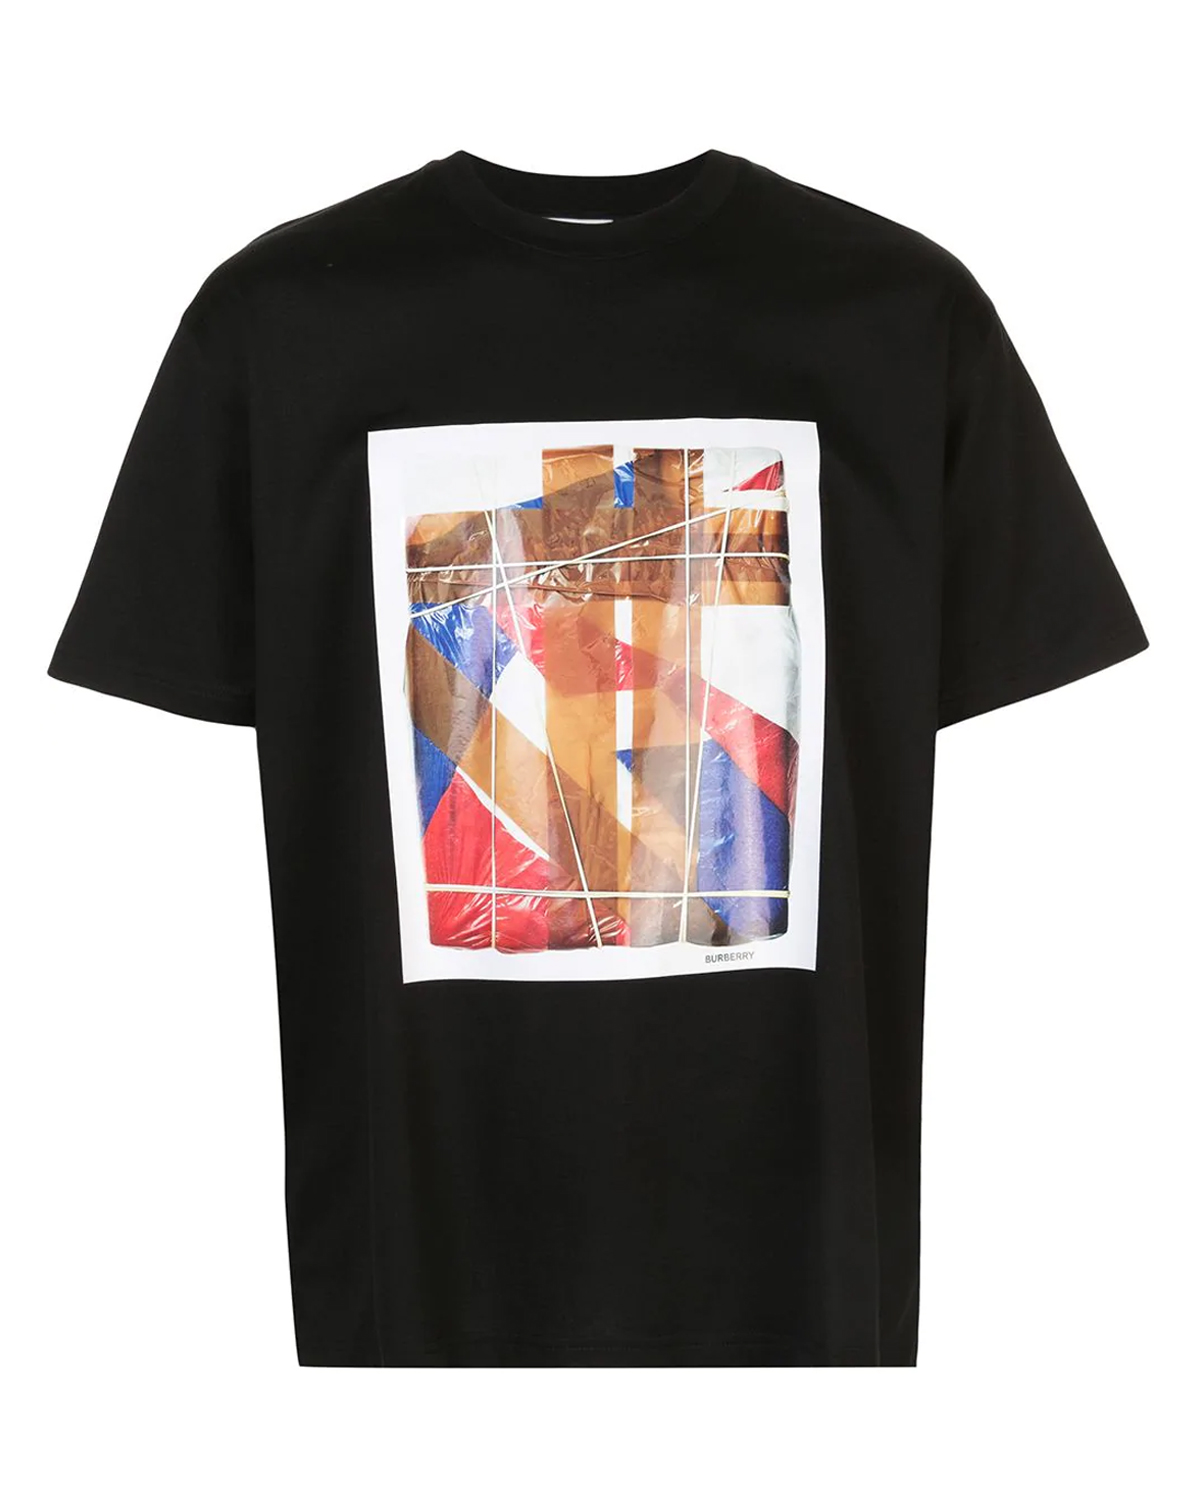 BURBERRY - Czarna koszulka z graficznym nadrukiem M8025704